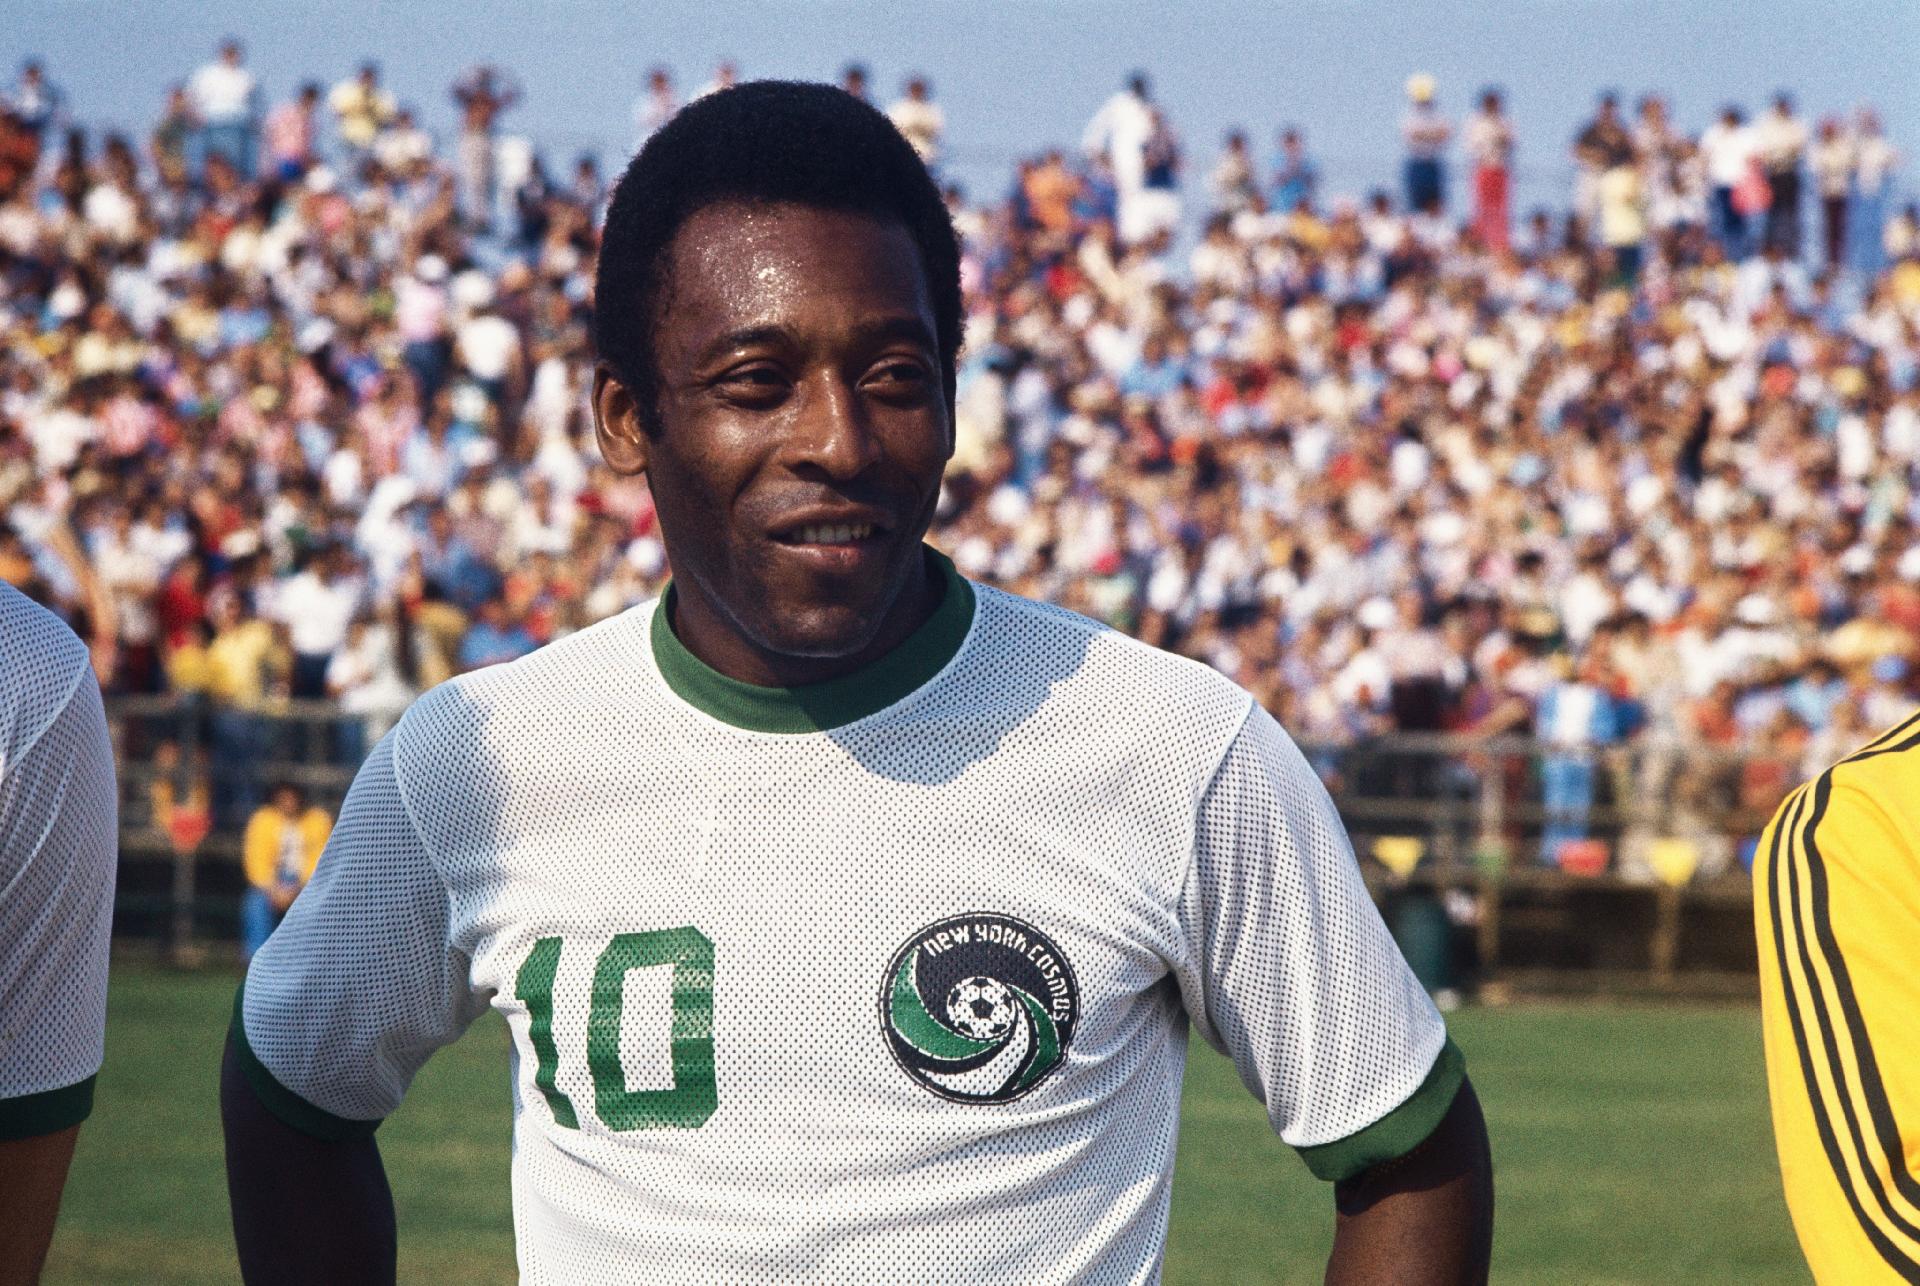 Retrato do rosto de Pelé na época em que o rei defendeu o NY Cosmos. Na imagem, o atleta está em pé no campo com o uniforme do clube norte-americano, com a multidão ao fundo. - Bettmann/Bettmann Archive